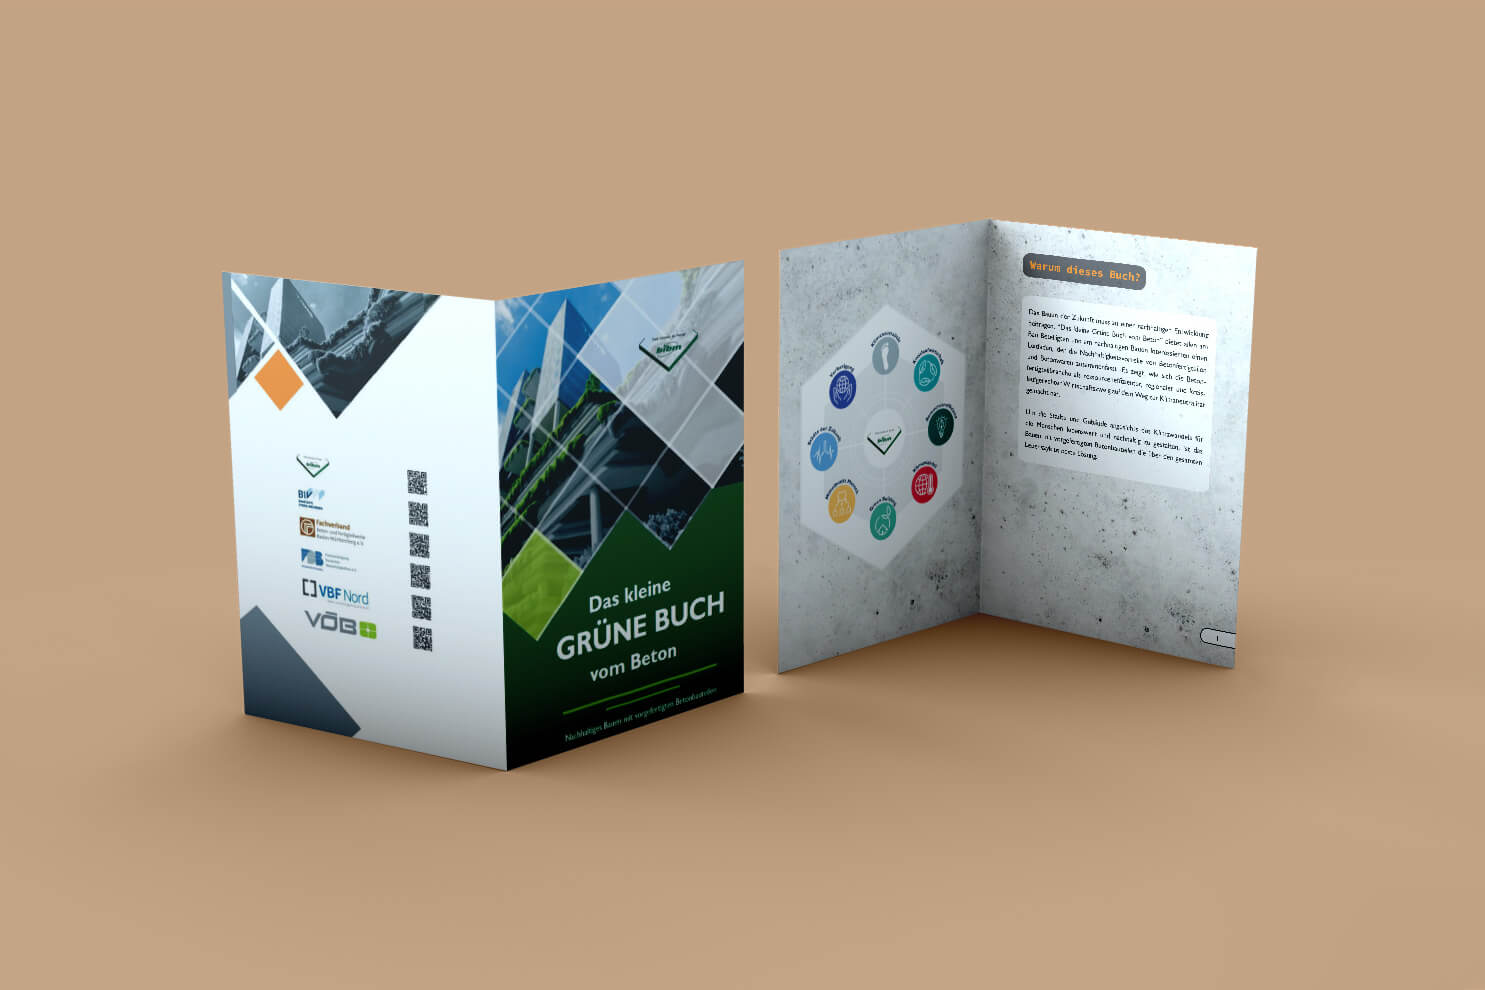 Digitaler Flyer "Das kleine grüne Buch vom Beton"